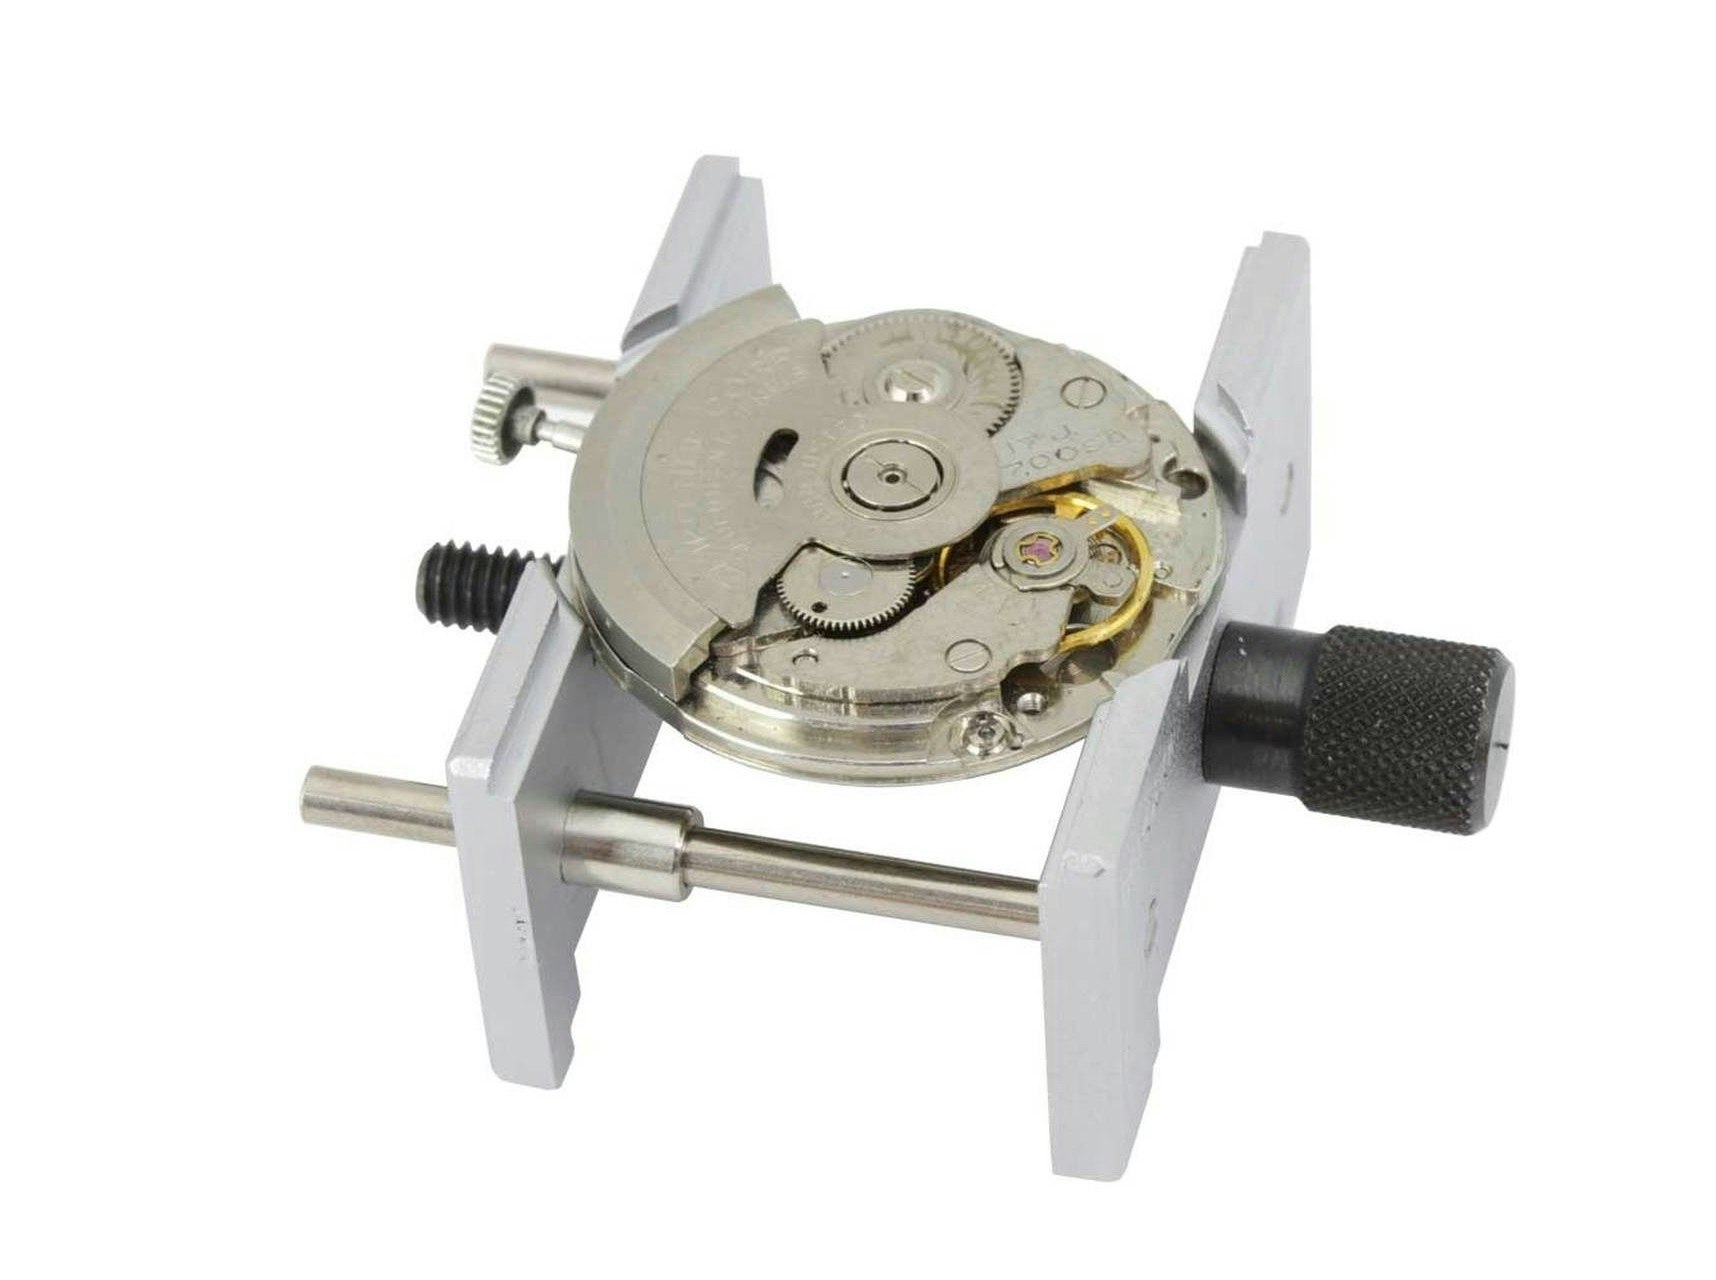 2st skruvstäd/klockhållare i metall (Klocka/urmakeri verktyg)